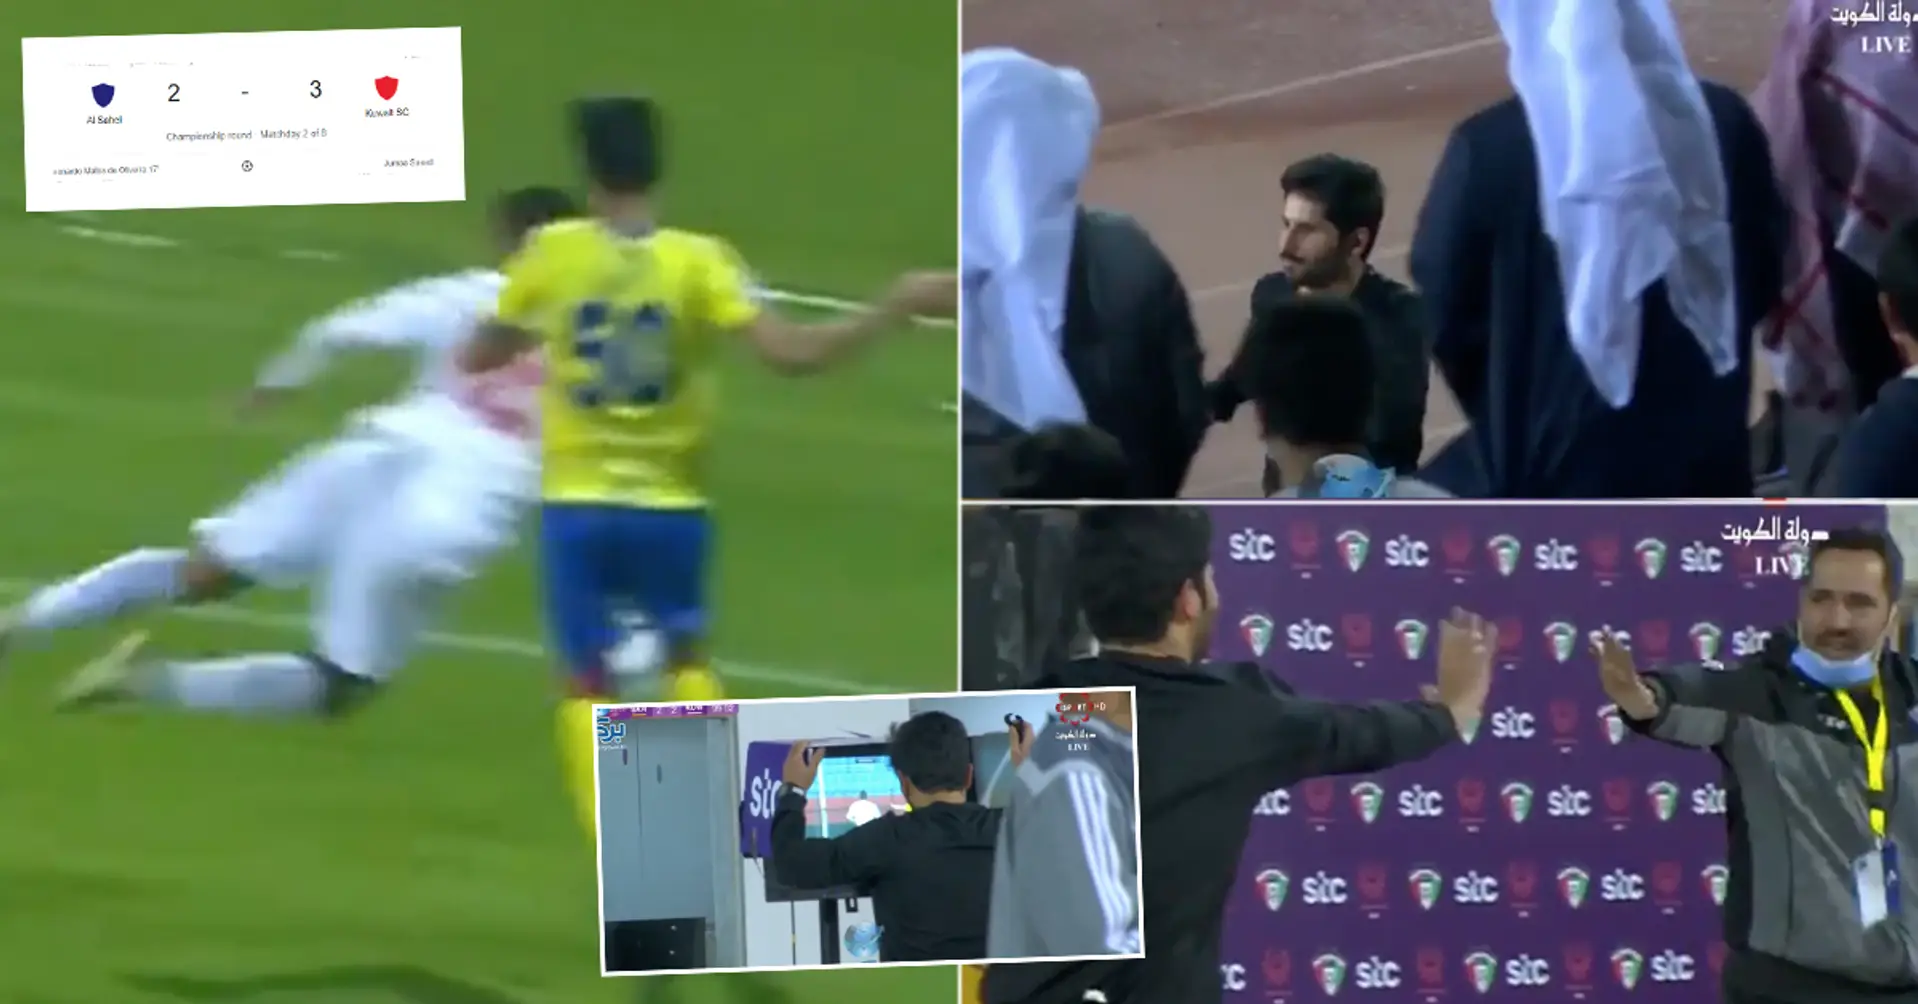 "Klare Korruption": Das Team im Besitz von einem Sheikh bekam die VAR-Hilfe nach einer beschämenden Schwalbe  und erzielte Siegtor in der 90+11. Minute